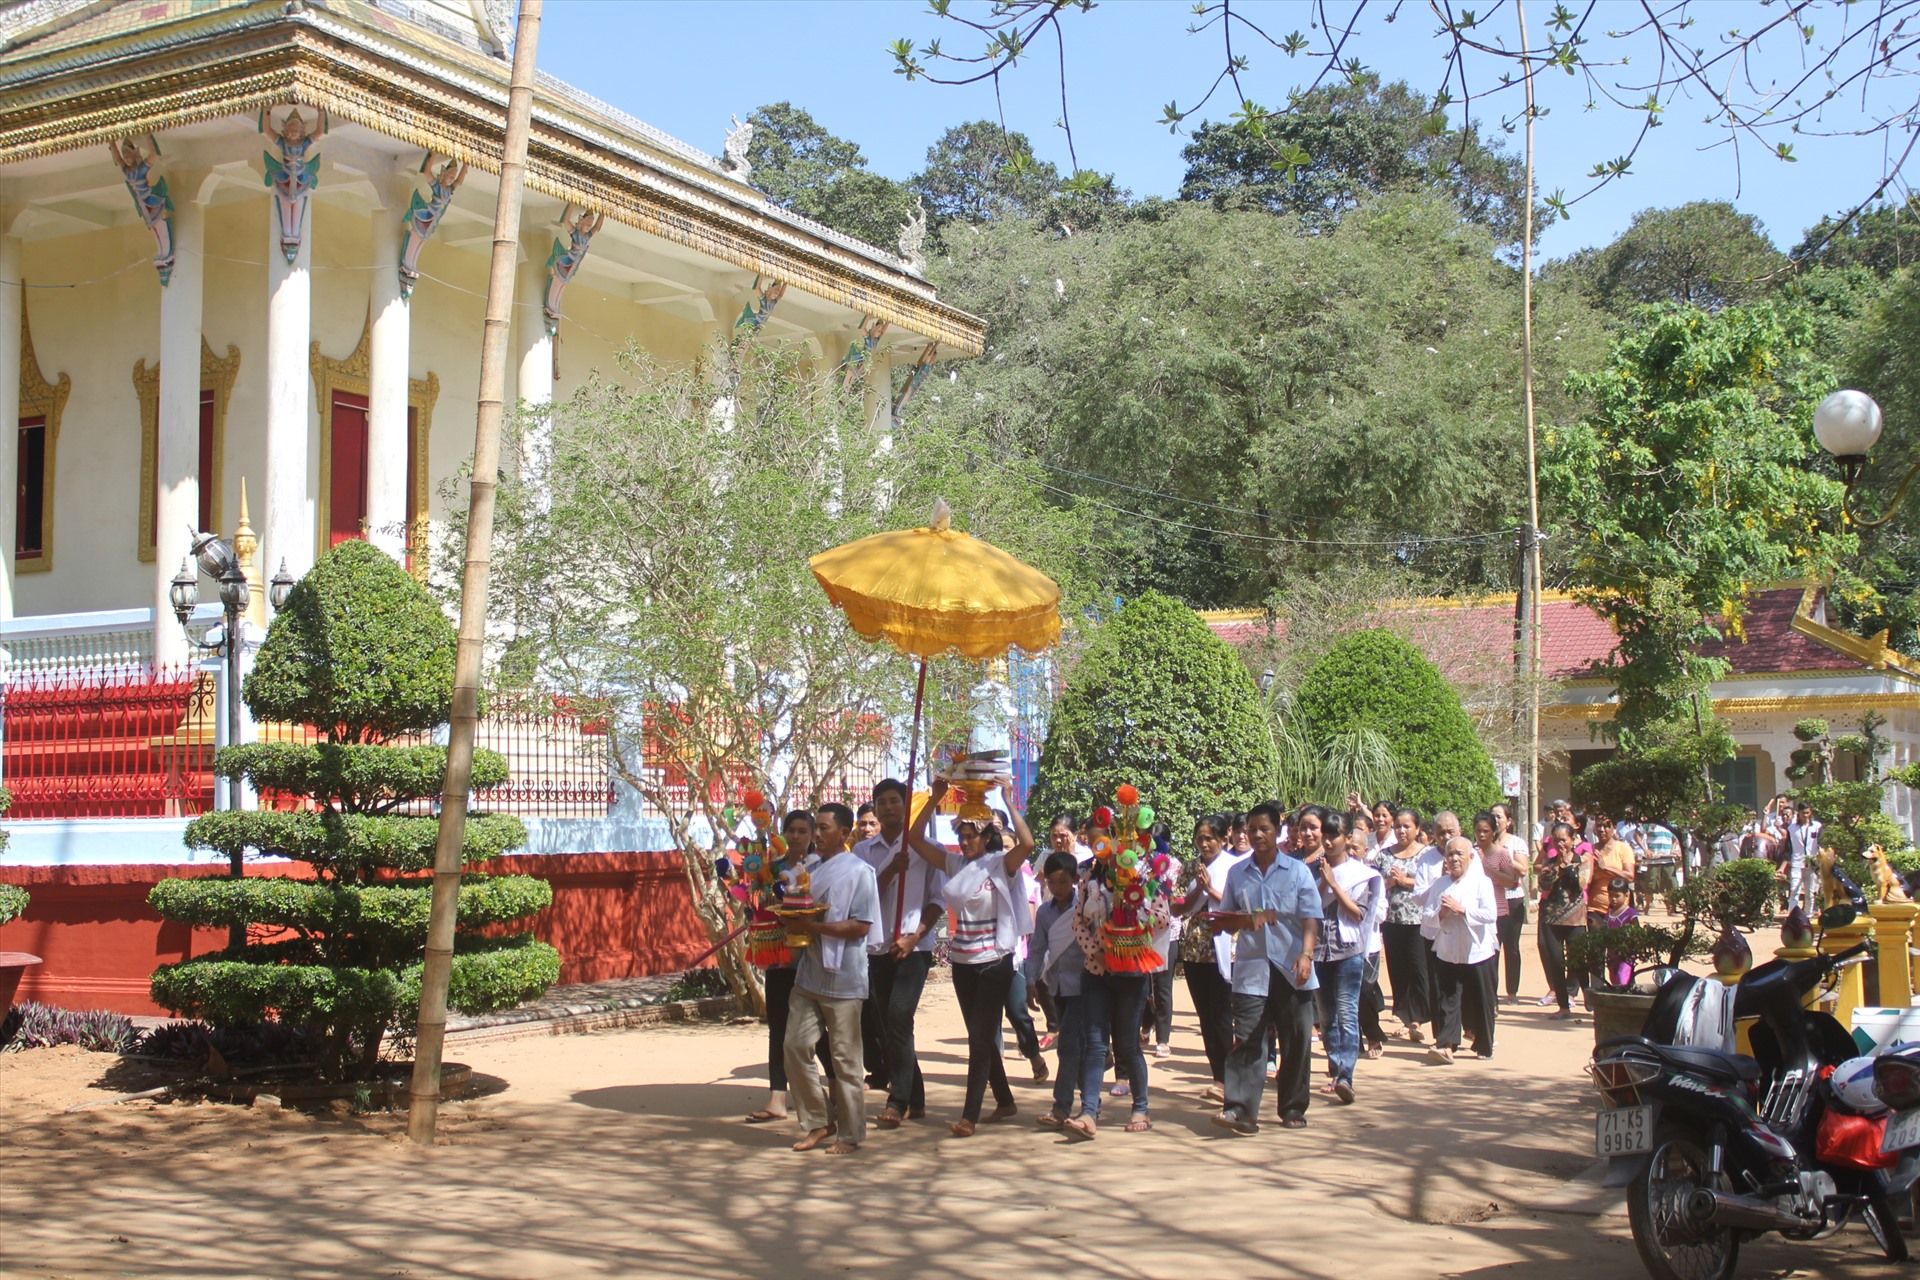 Chùa Khmer còn là nơi diễn ra nhiều lễ hội truyền thống của đồng bào Khmer như: Ol om bok, chol chnam thmay...